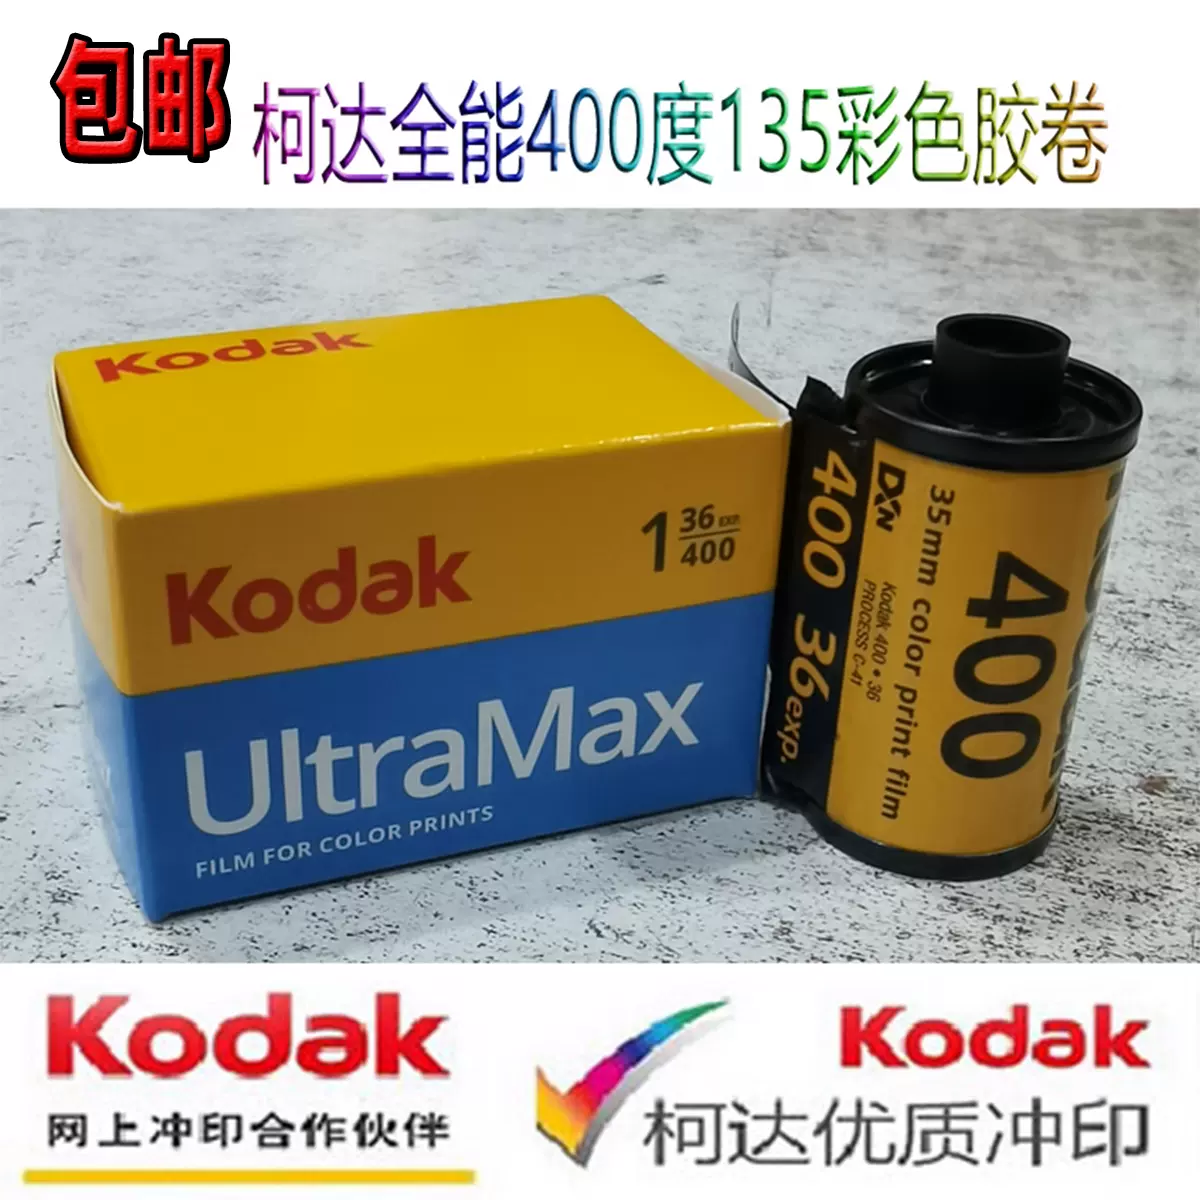 柯达原装KODAK 全能ultramax400度135彩色负片35mm胶卷2025年7月-Taobao